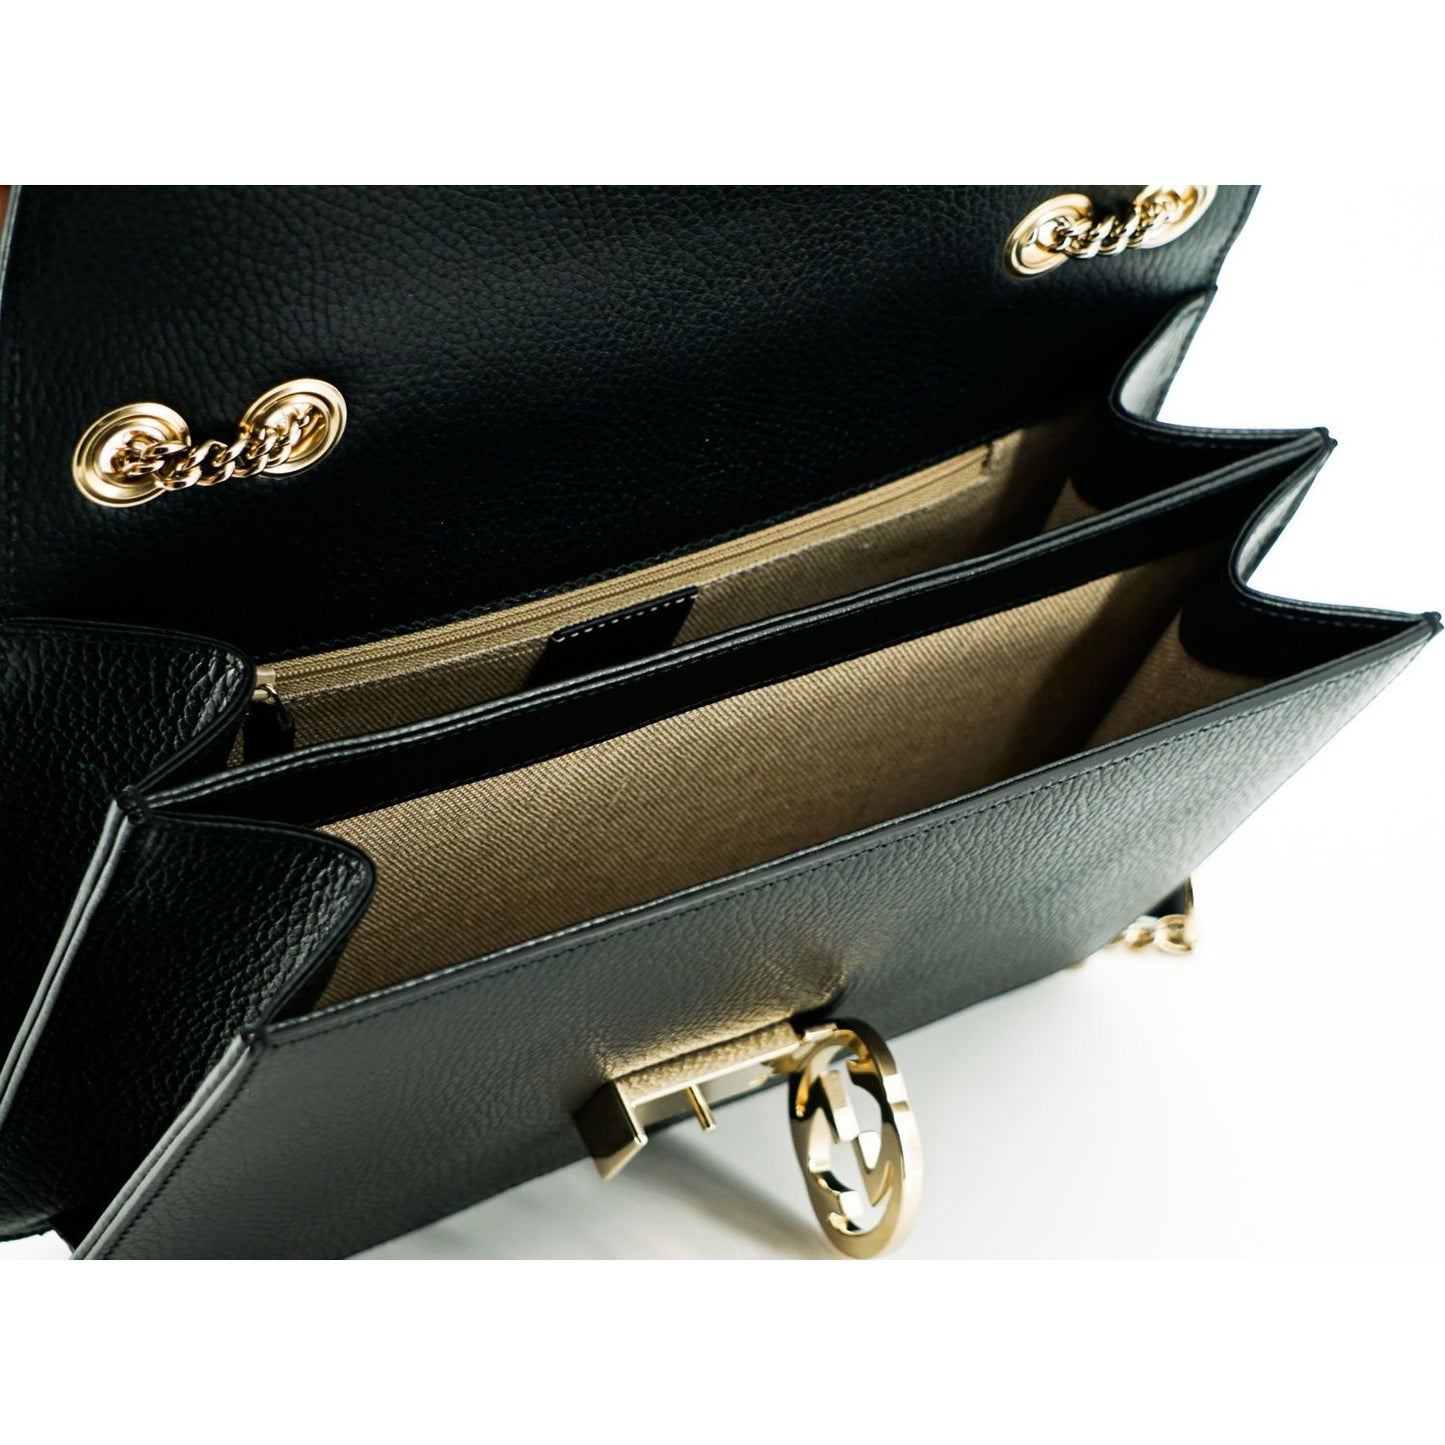 Gucci Elegant Calf Leather Shoulder Bag black-calf-leather-dollar-shoulder-bag-2 D50040-2-1-scaled-1da2f303-078.jpg